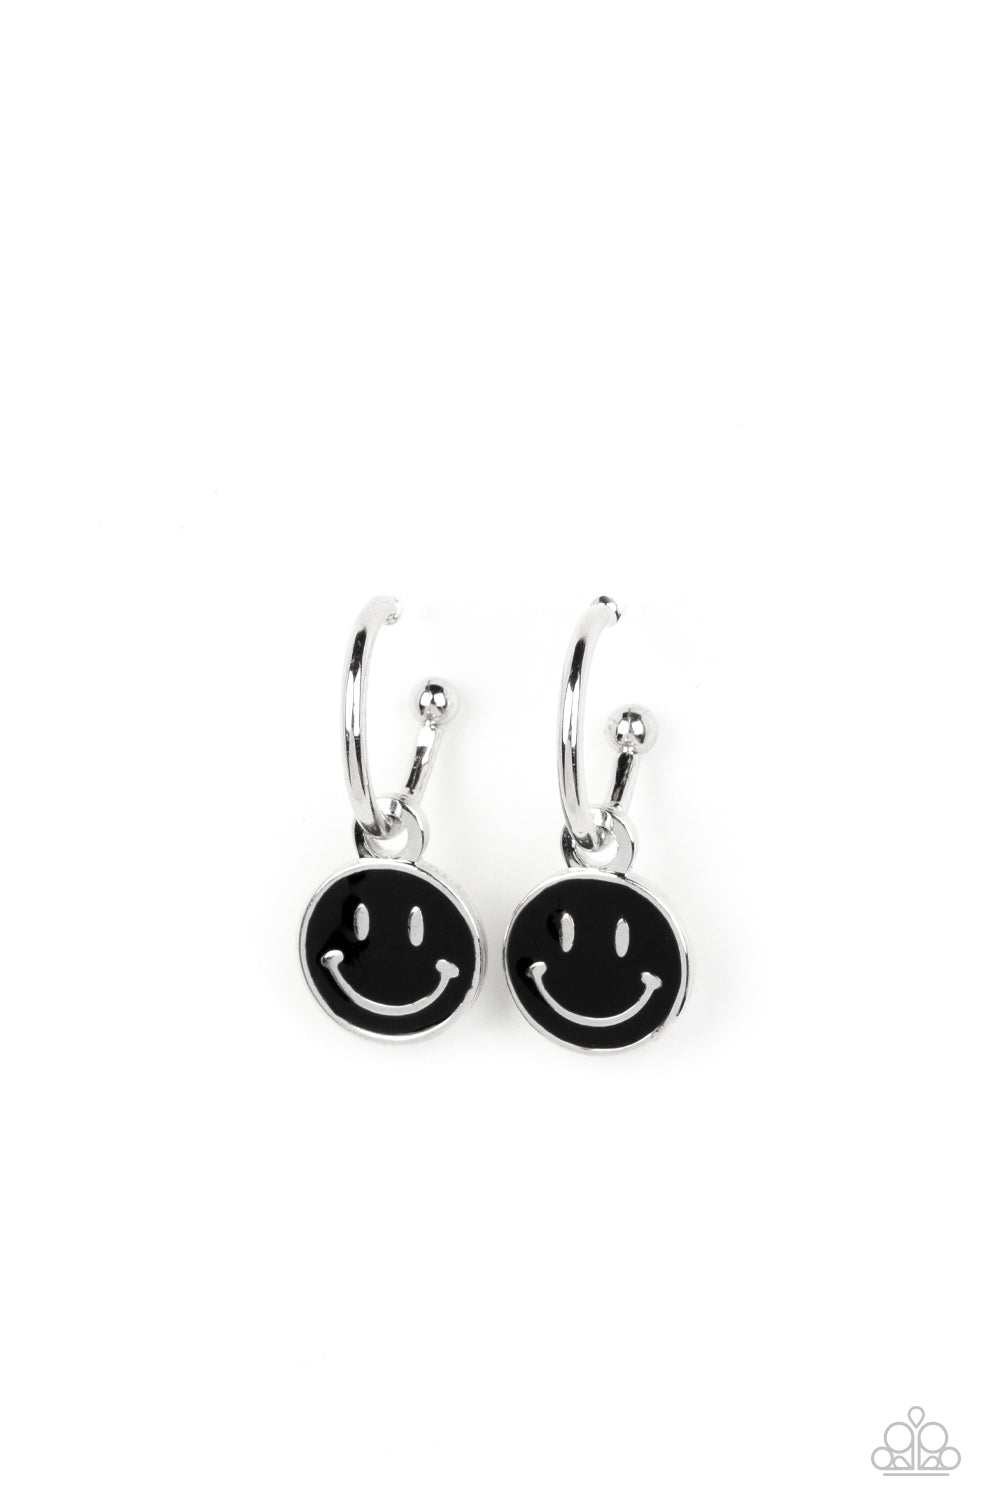 Subtle Smile - Black Earrings - Paparazzi Accessories